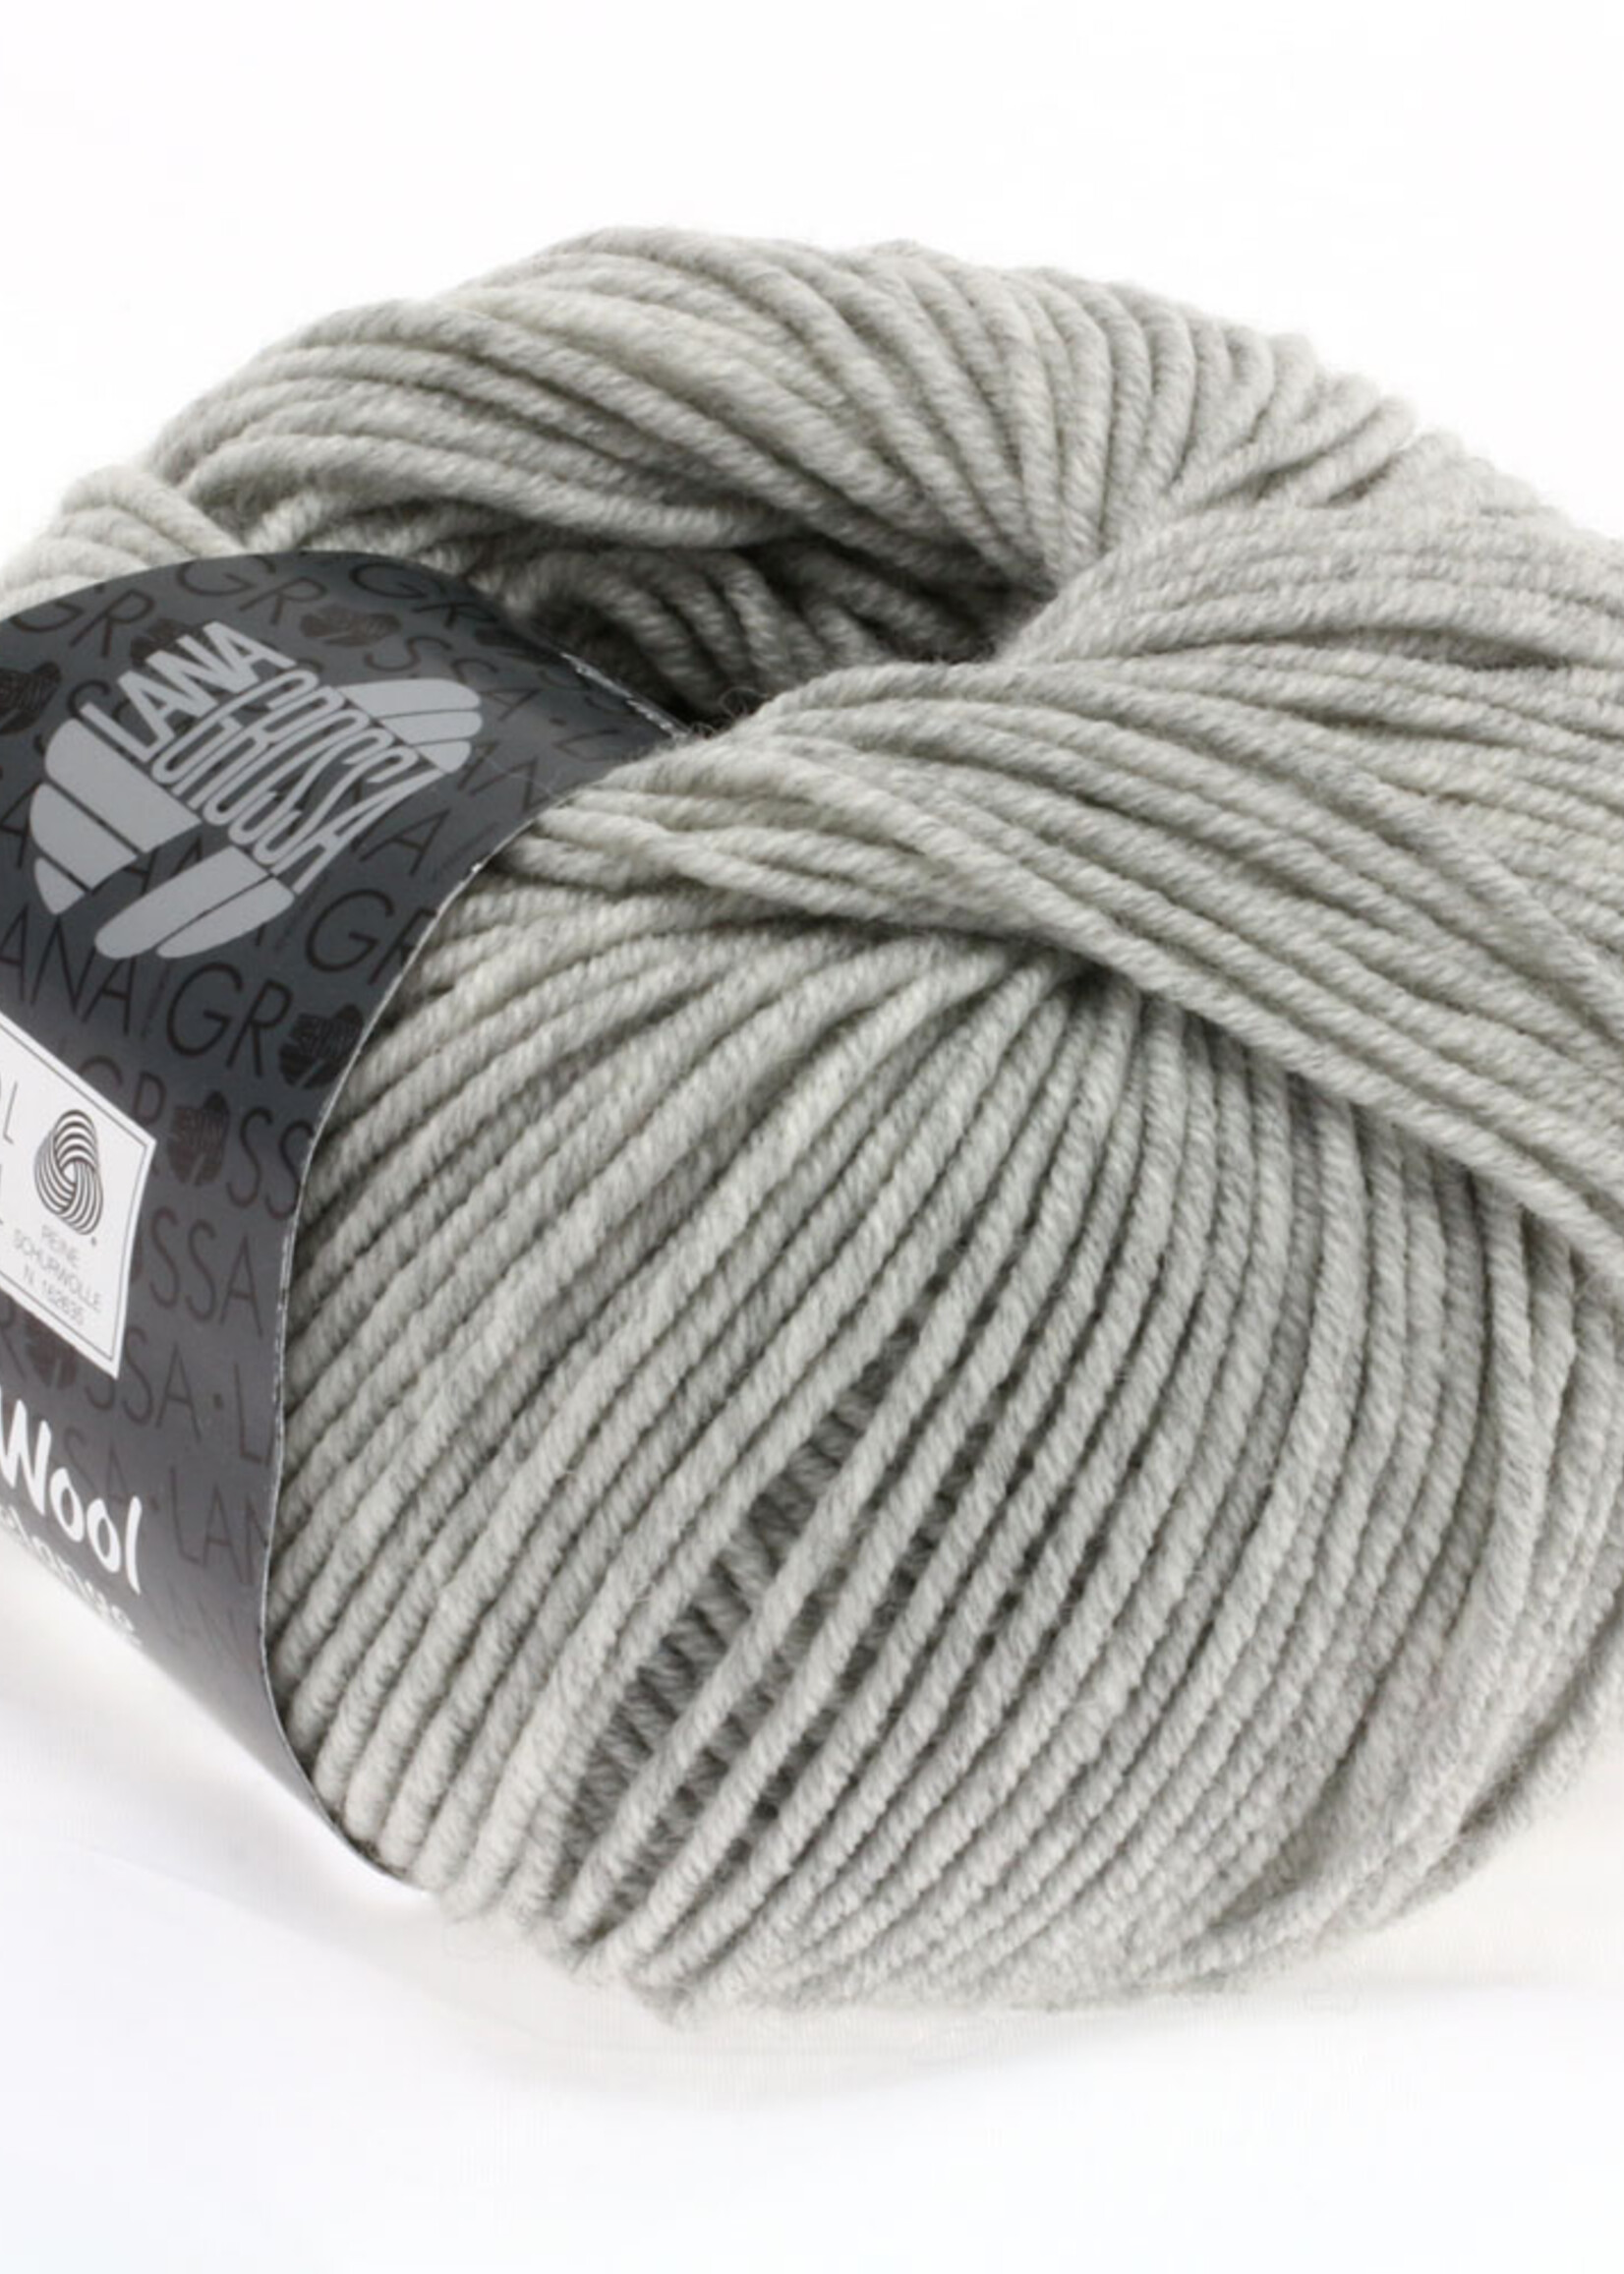 Lana Grossa Cool Wool - Lana Grossa 0443-bleekgrijs gemêleerd